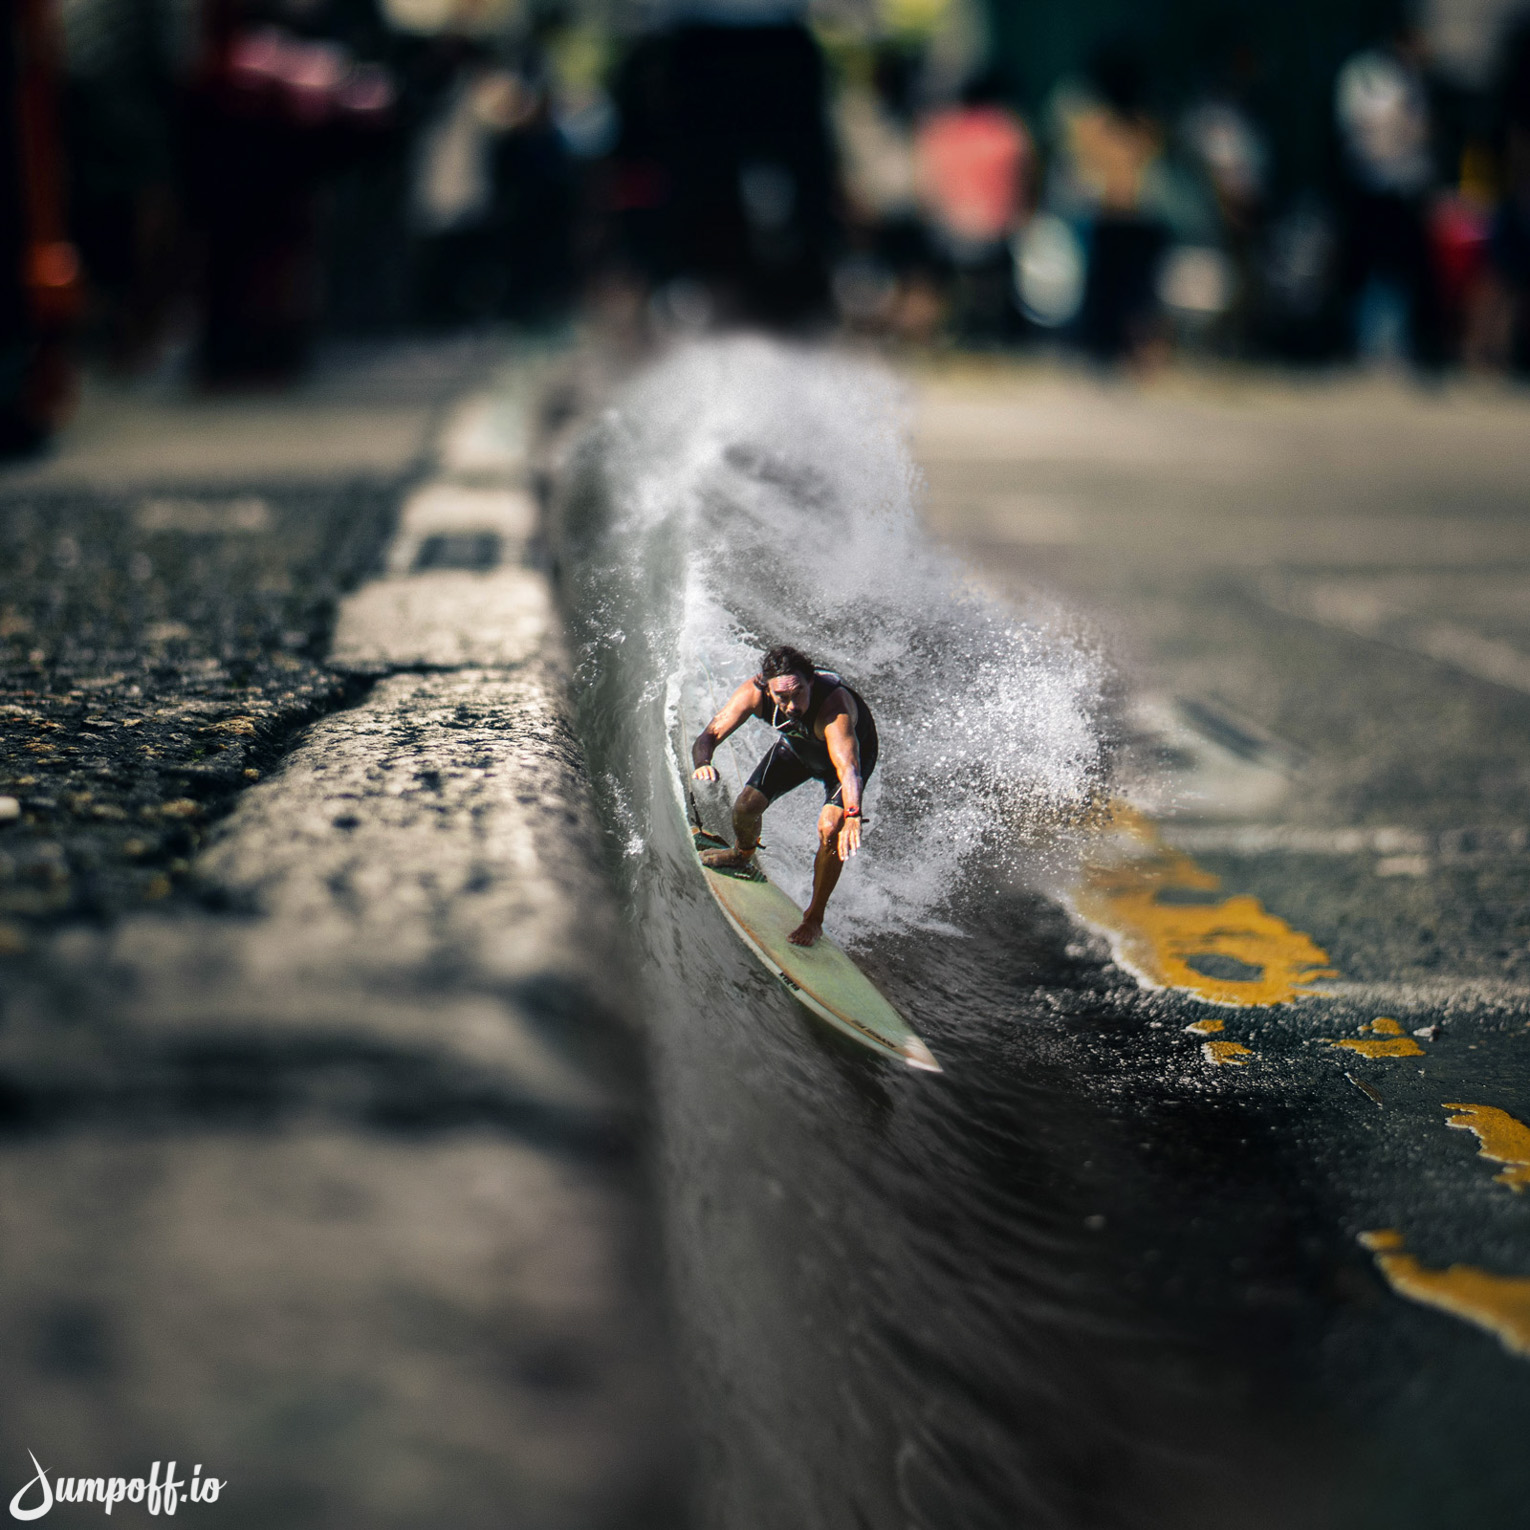 sidewalk surfing